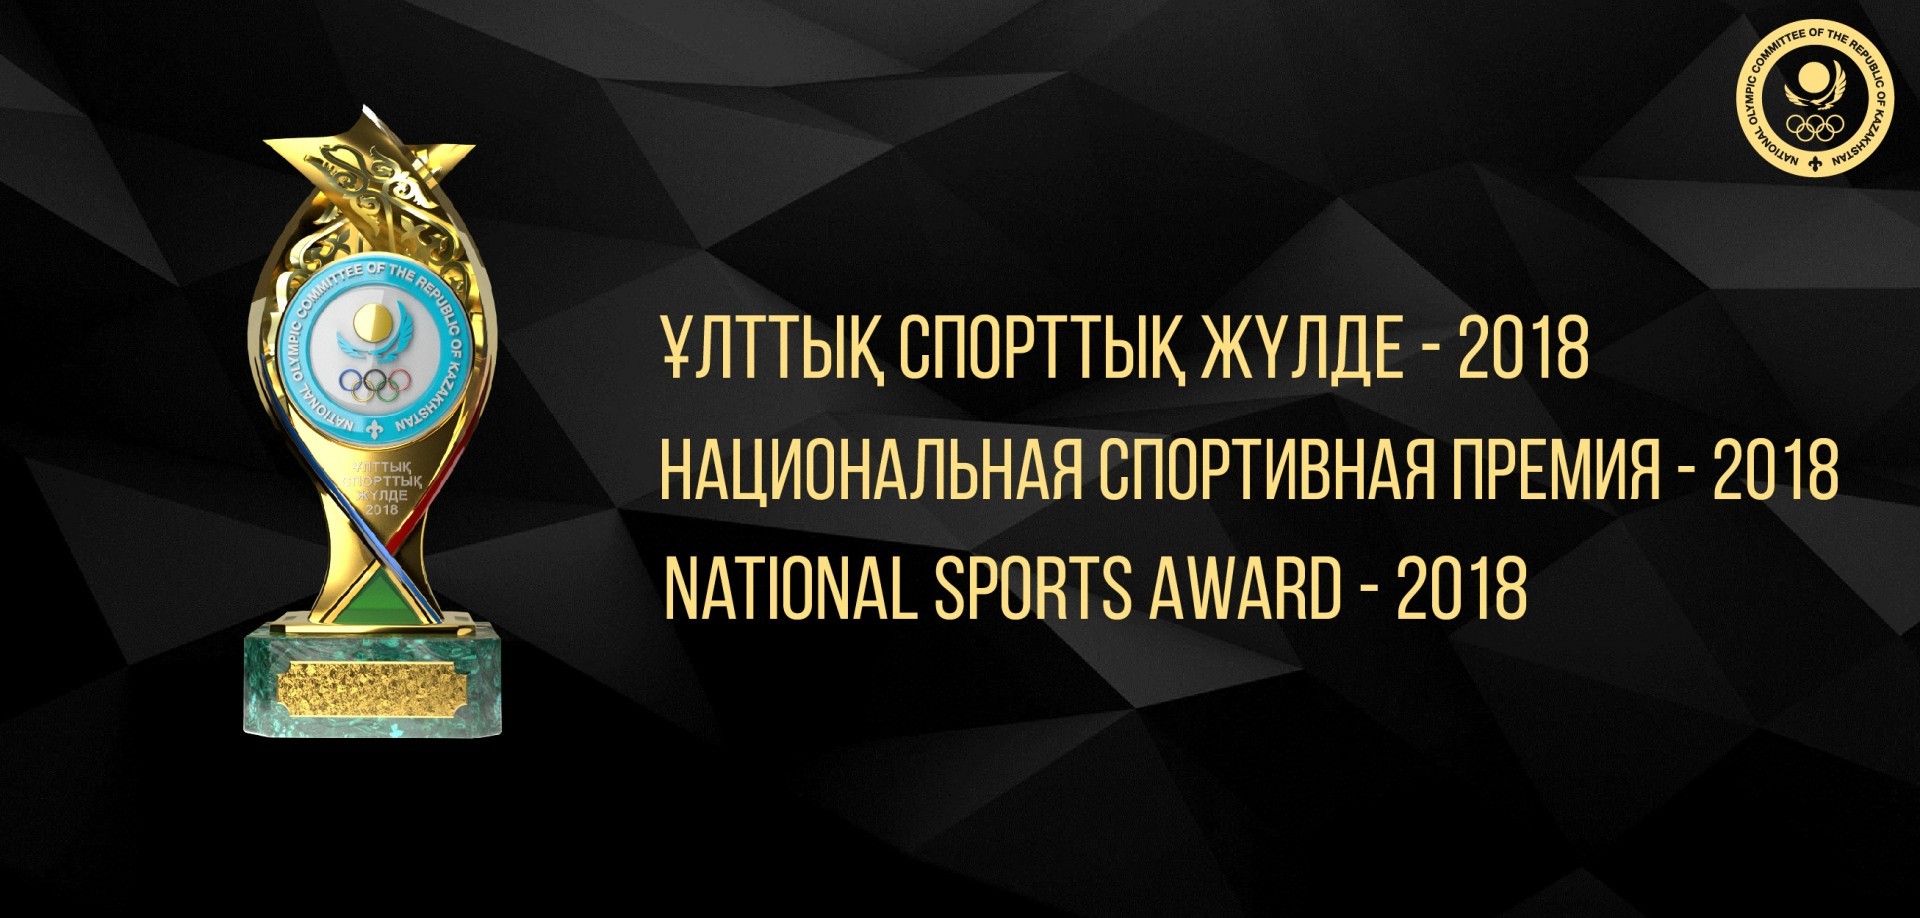 За номинантов Национальной спортивной премии – 2018 уже проголосовало более 100 тыс. человек 